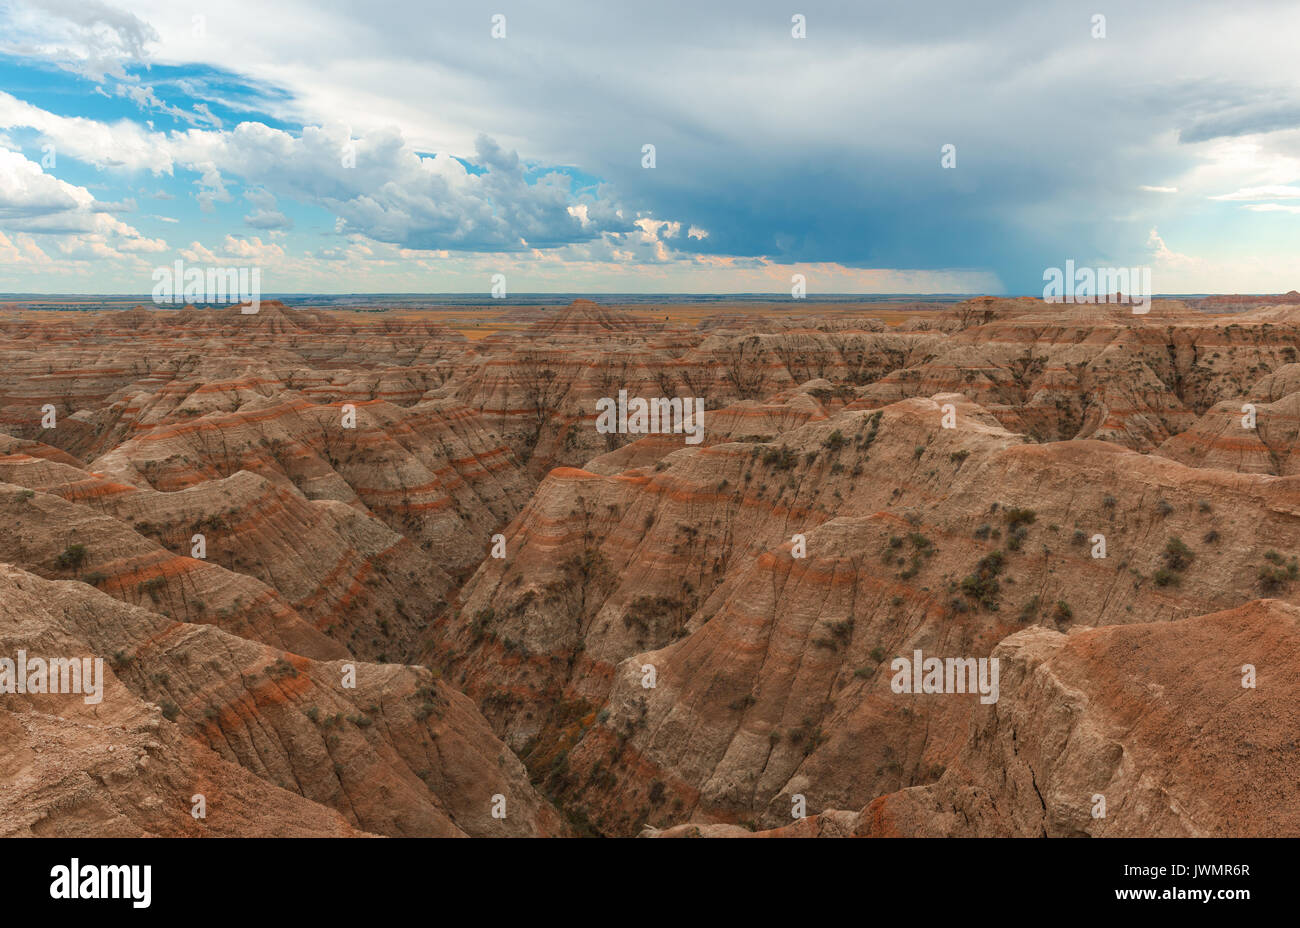 Landschaft in den Badlands National Park mit seinen Rock stratifizierungen und ein Gewitter auf dem Weg zum Sonnenuntergang, South Dakota, Vereinigte Staaten von Amerika, USA. Stockfoto